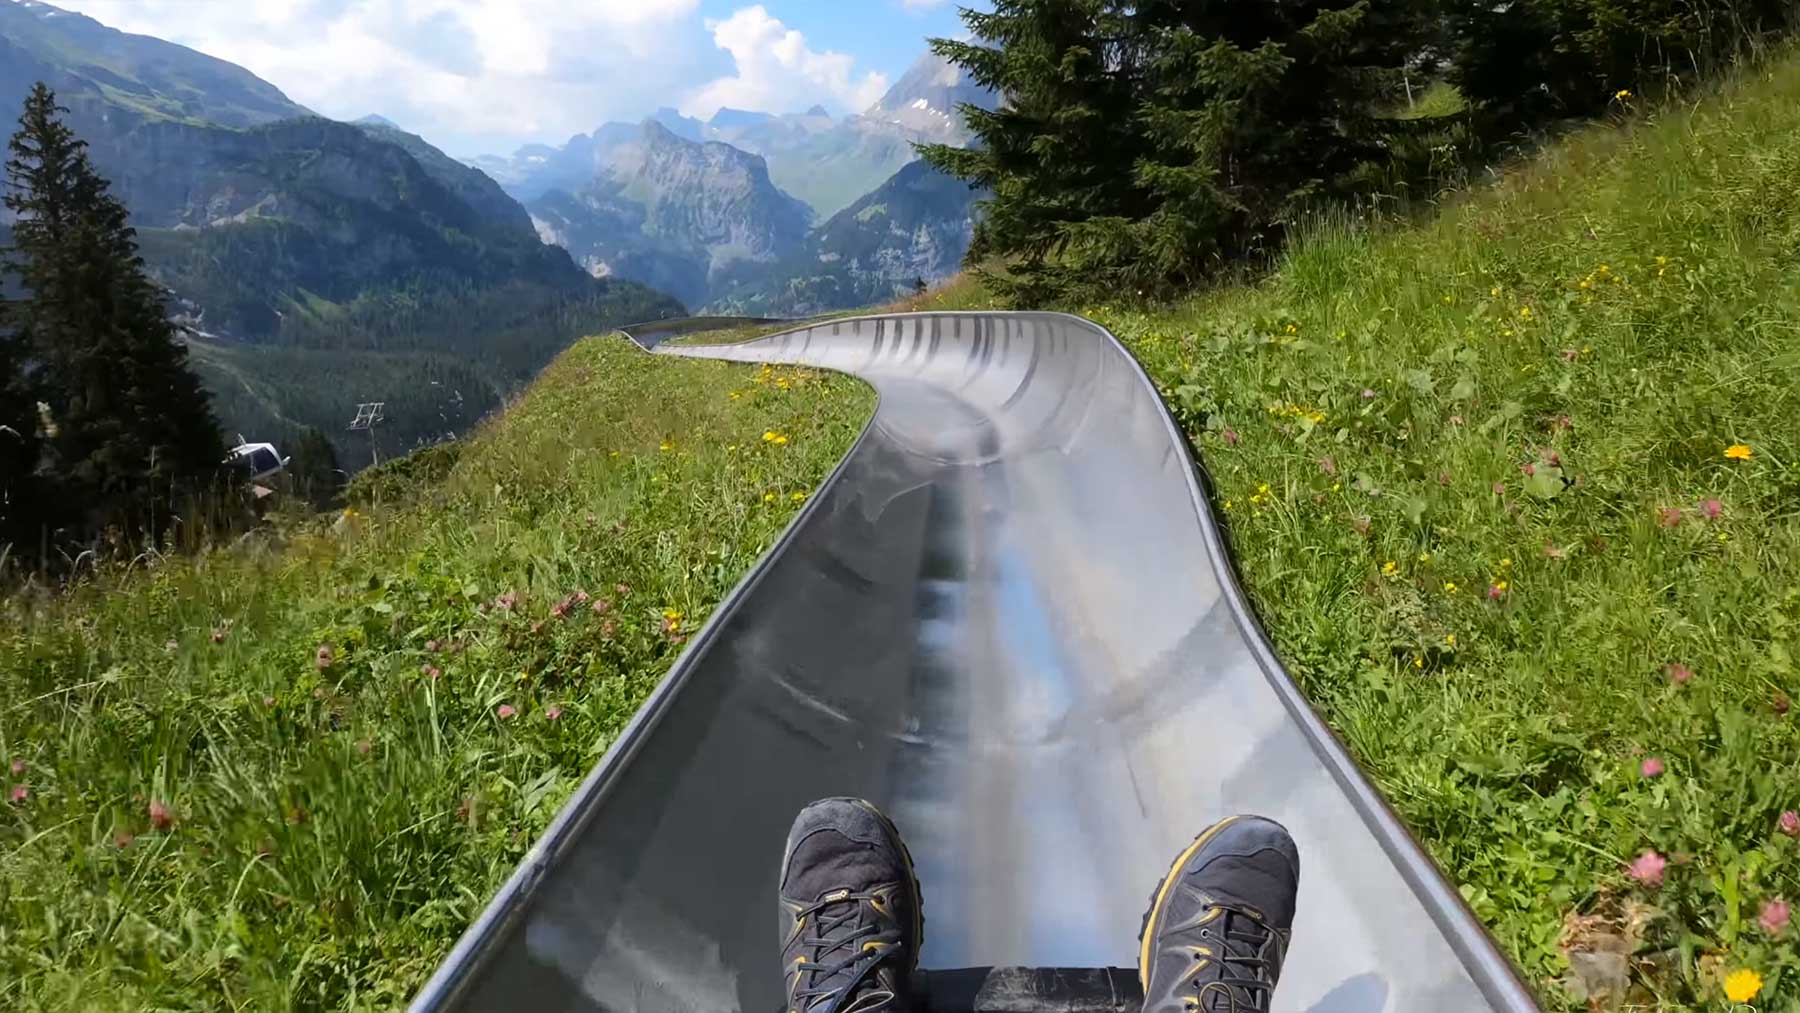 Sommerrodelbahn-Fahrt durch Schweizer Berge sommerrodelbahn-schweizer-berge-Oeschinensee 